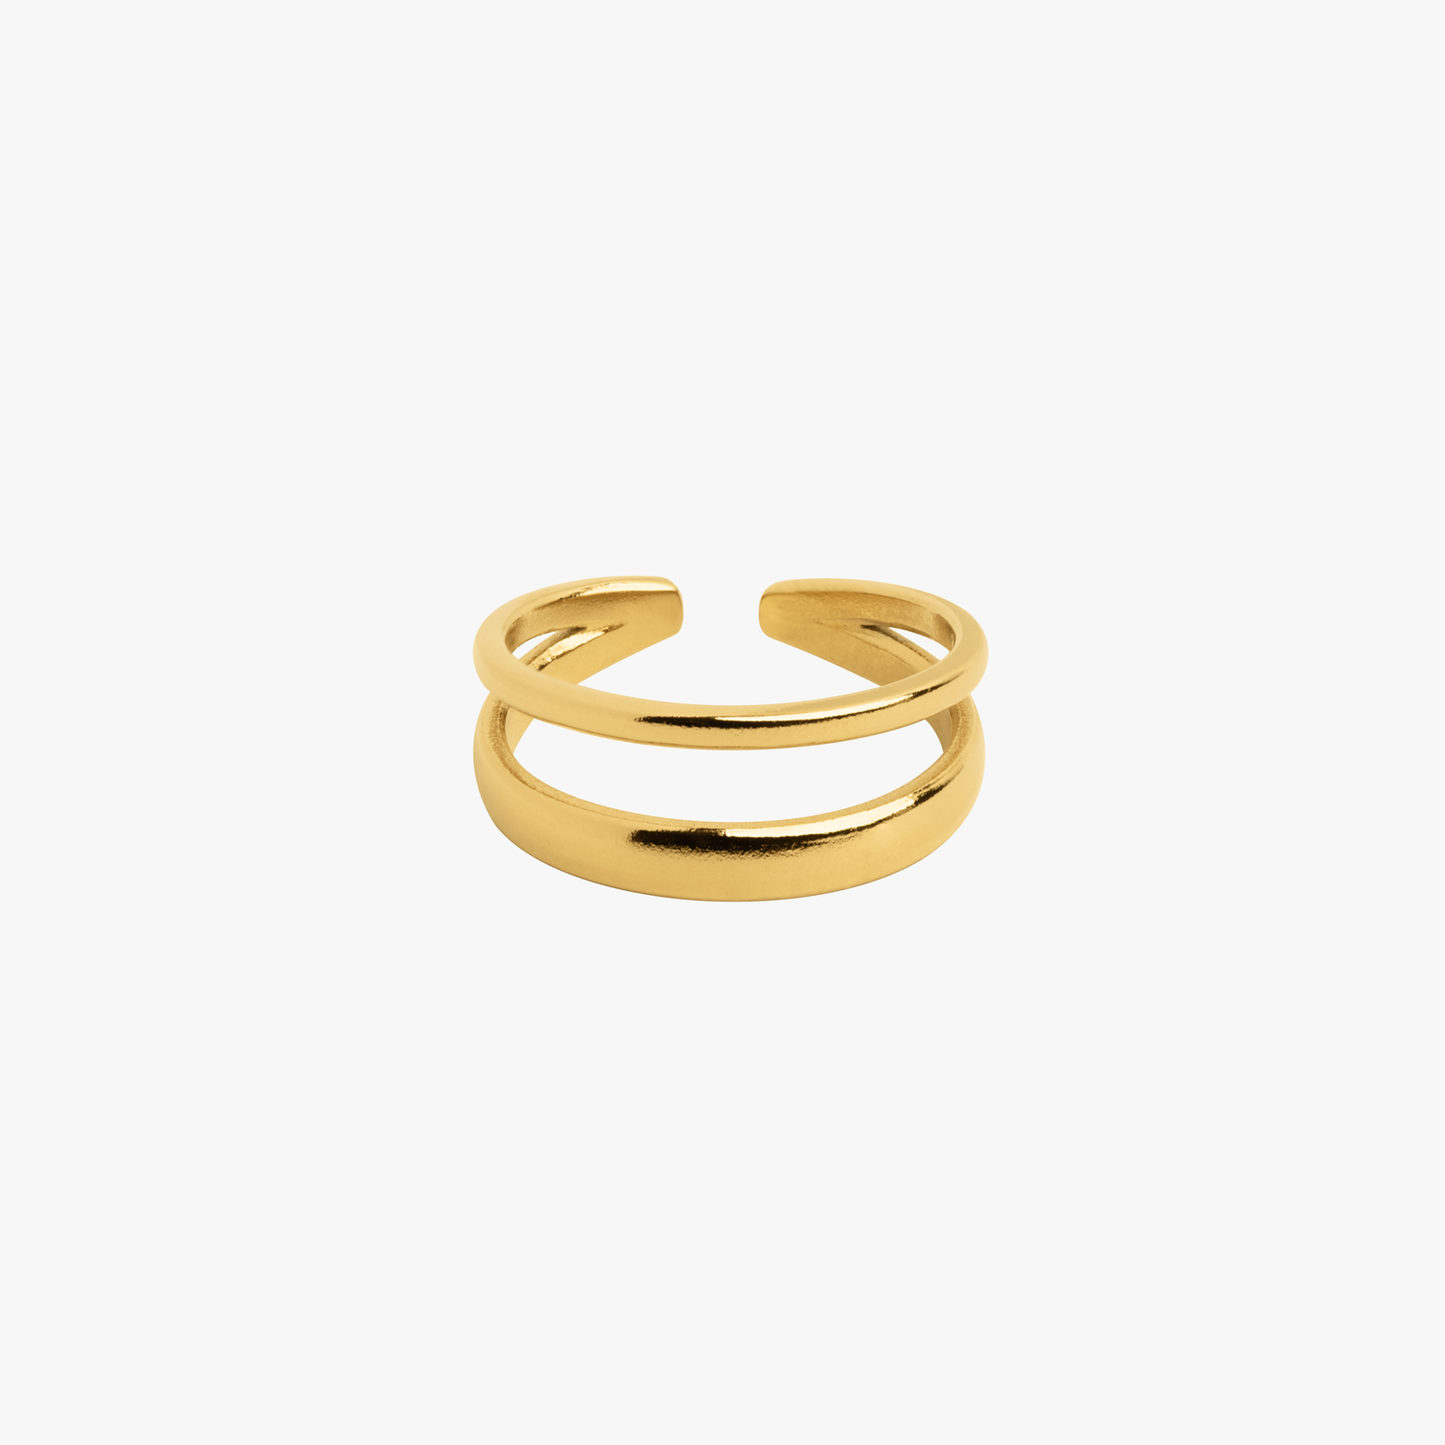 Produktfoto Ring "Double" - Ringe im Shop von COPARIE.